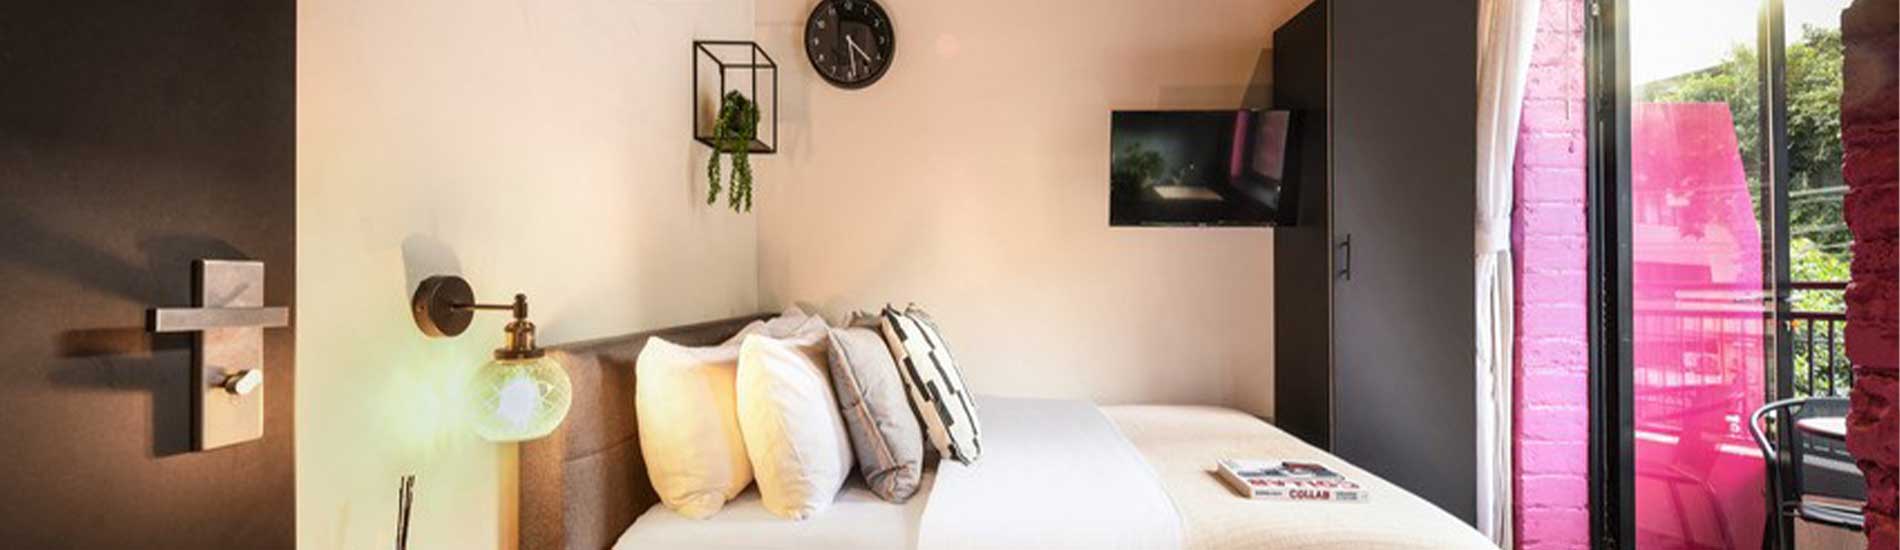 חדר במלון סיליקאט תל אביב, מיטה זוגית, יציאה למרפסת